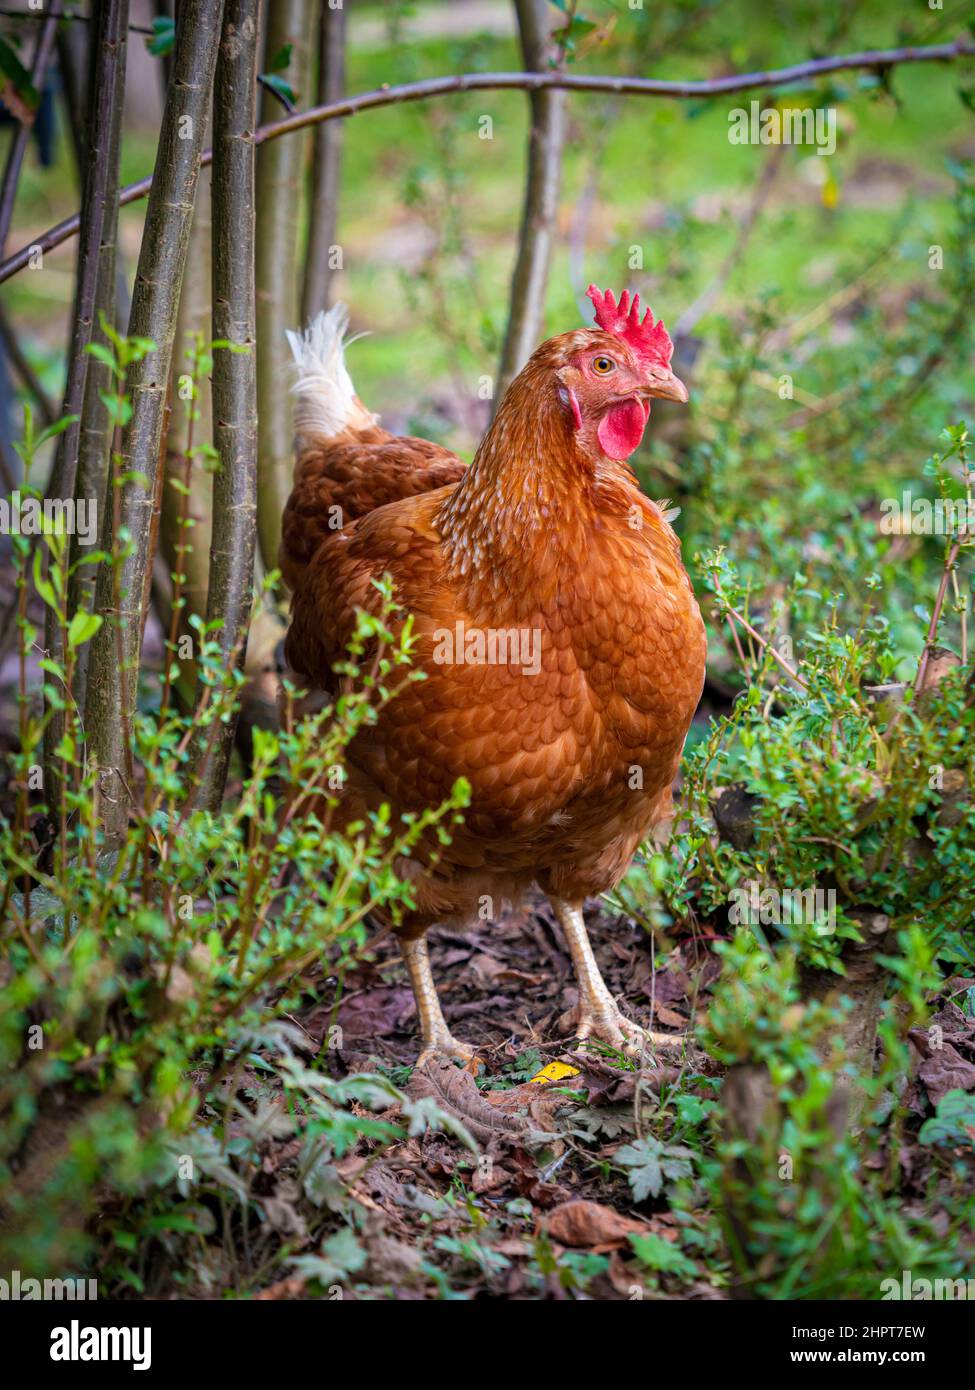 Braunes Huhn mit rotem Kamm und Wattklatschen, die in einem Heckenboden Futter finden. Stockfoto